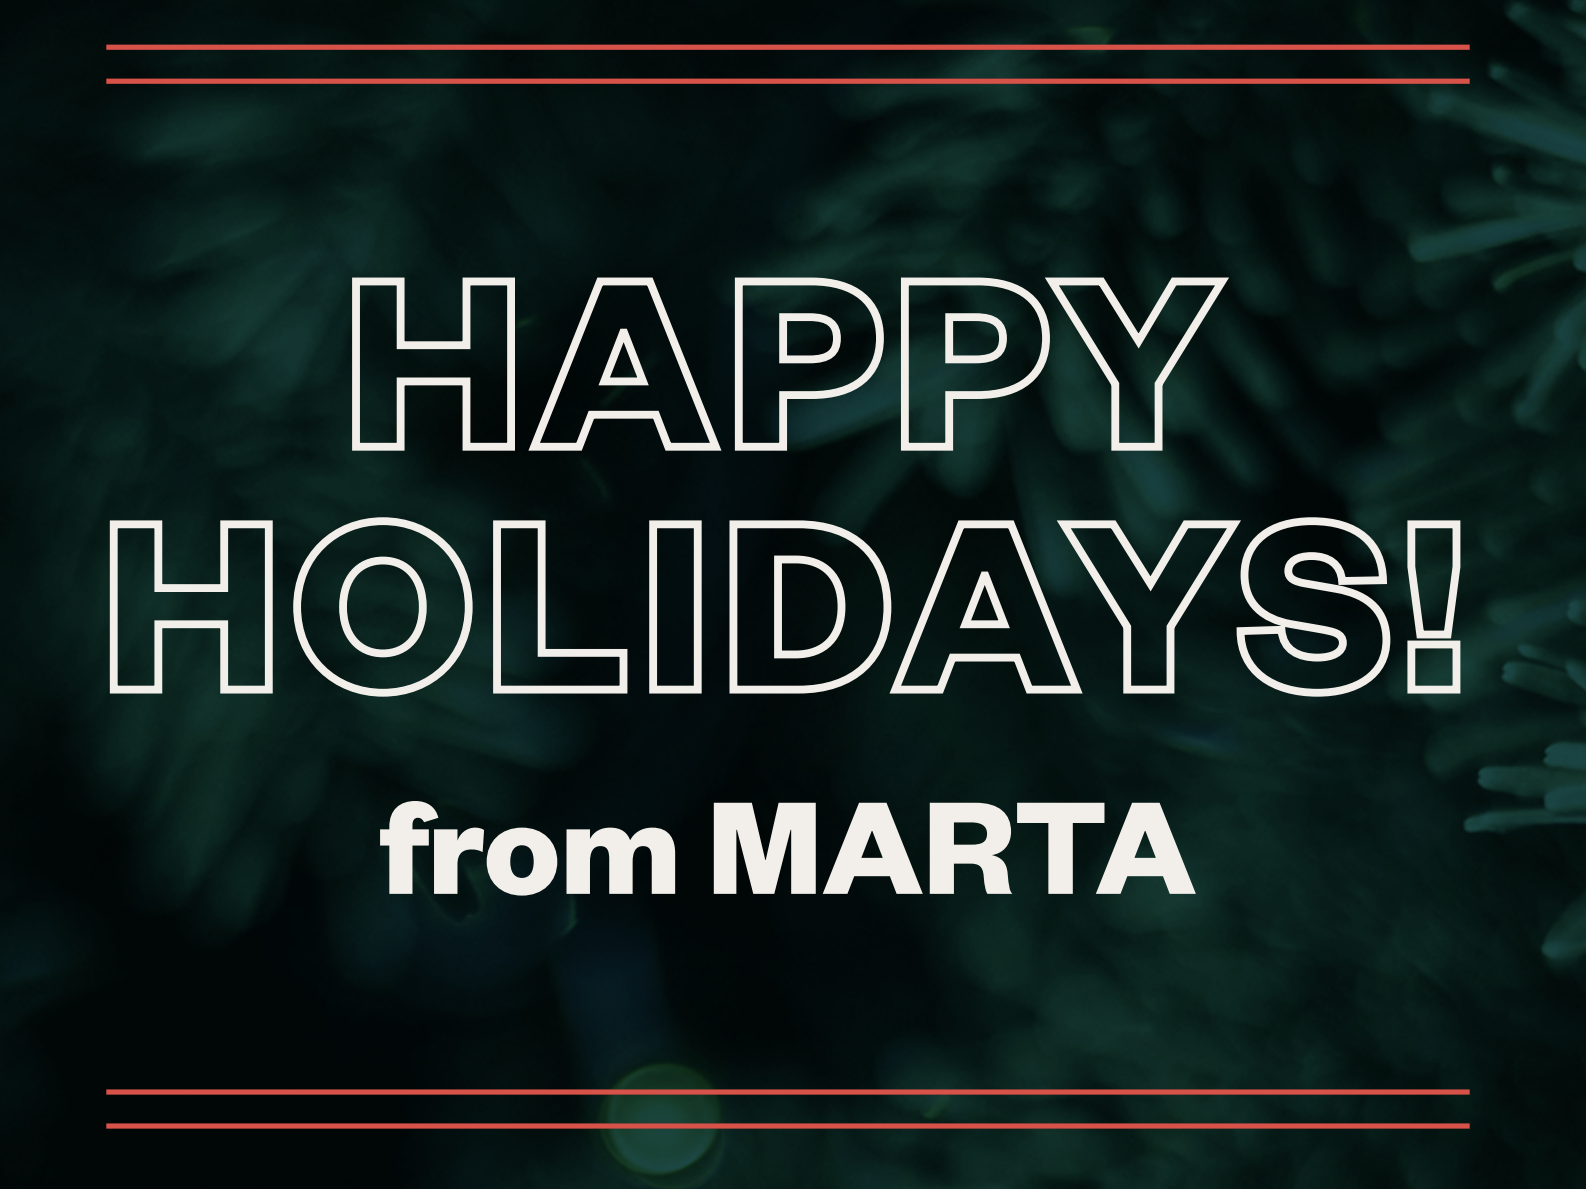 Happy Holidays from MARTA